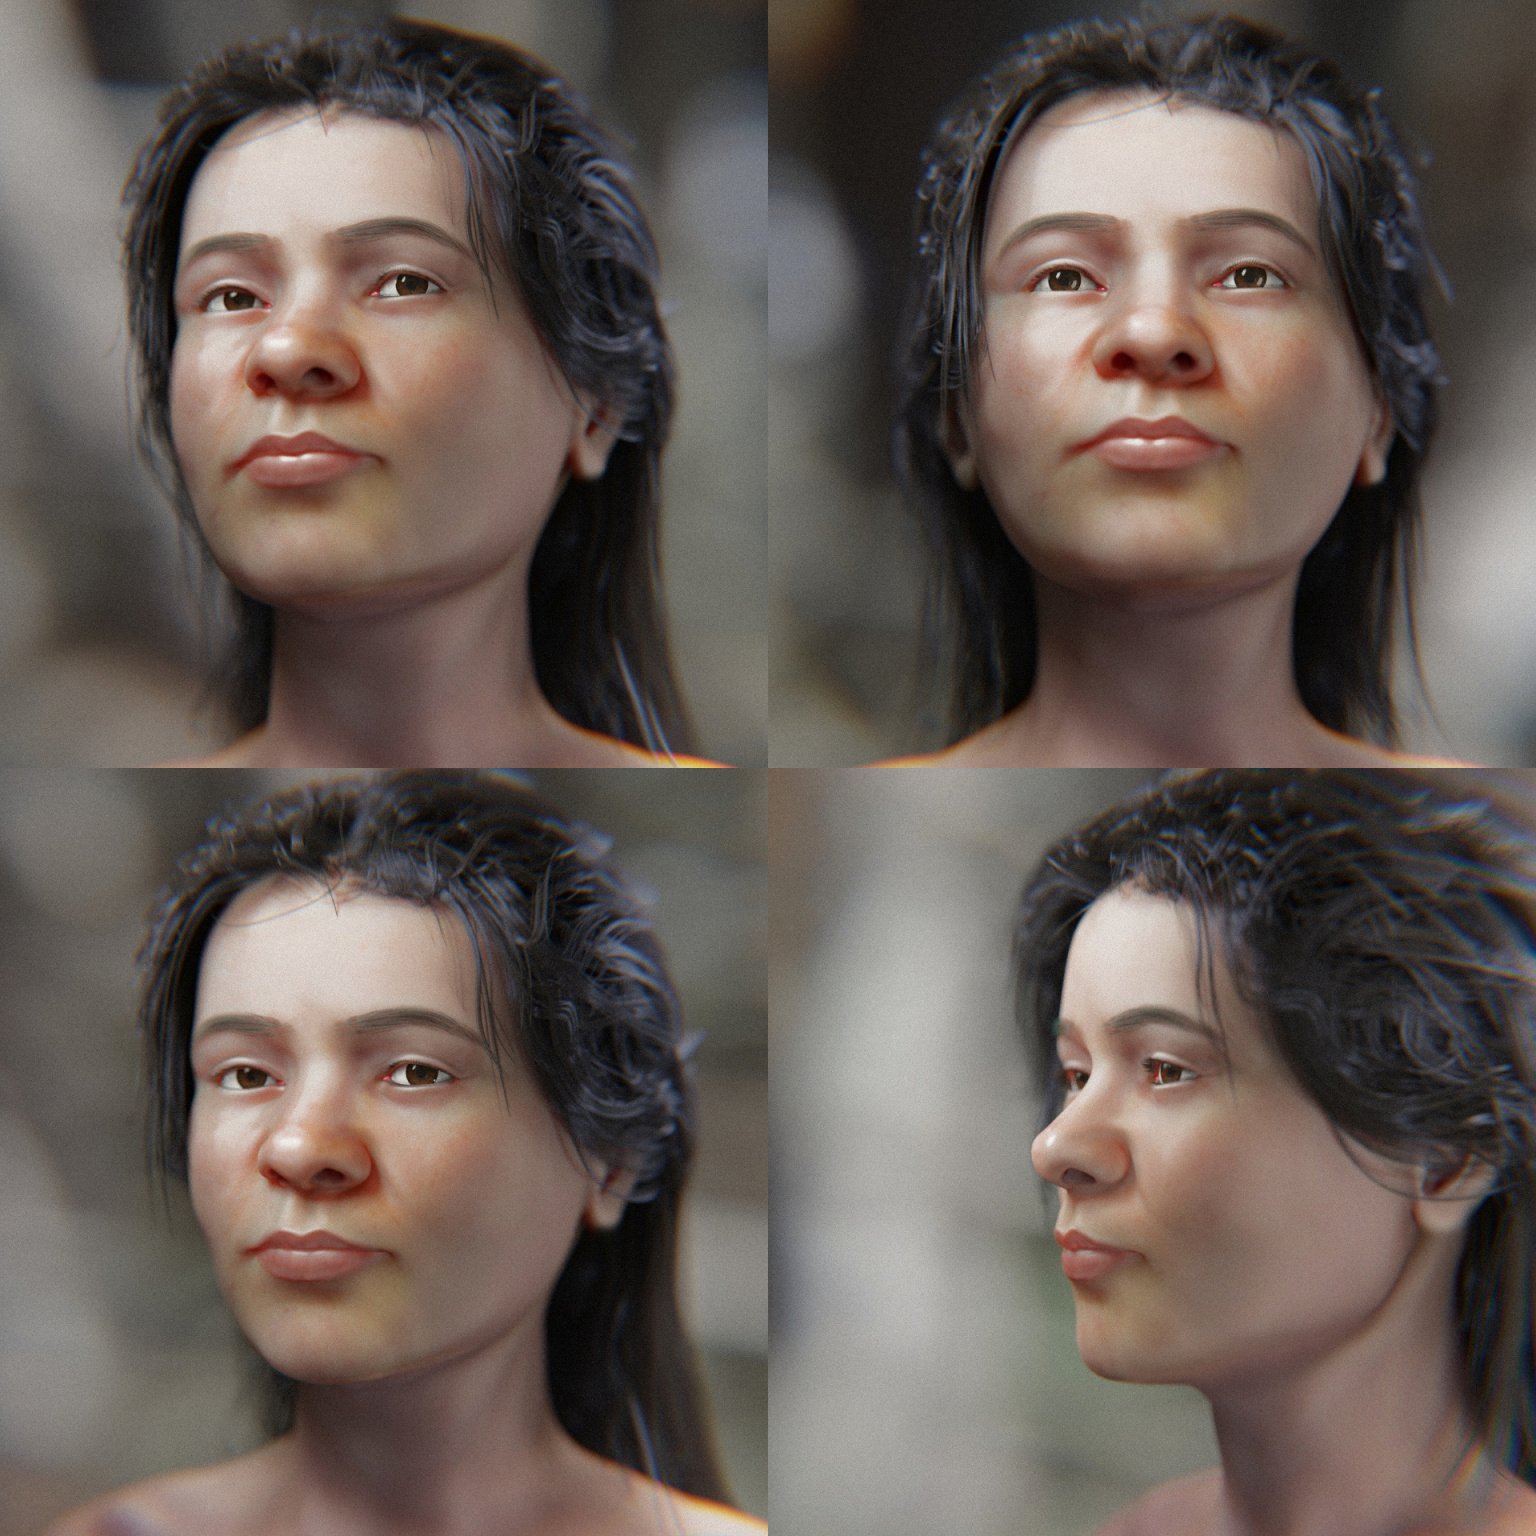 Facial close-ups if ava